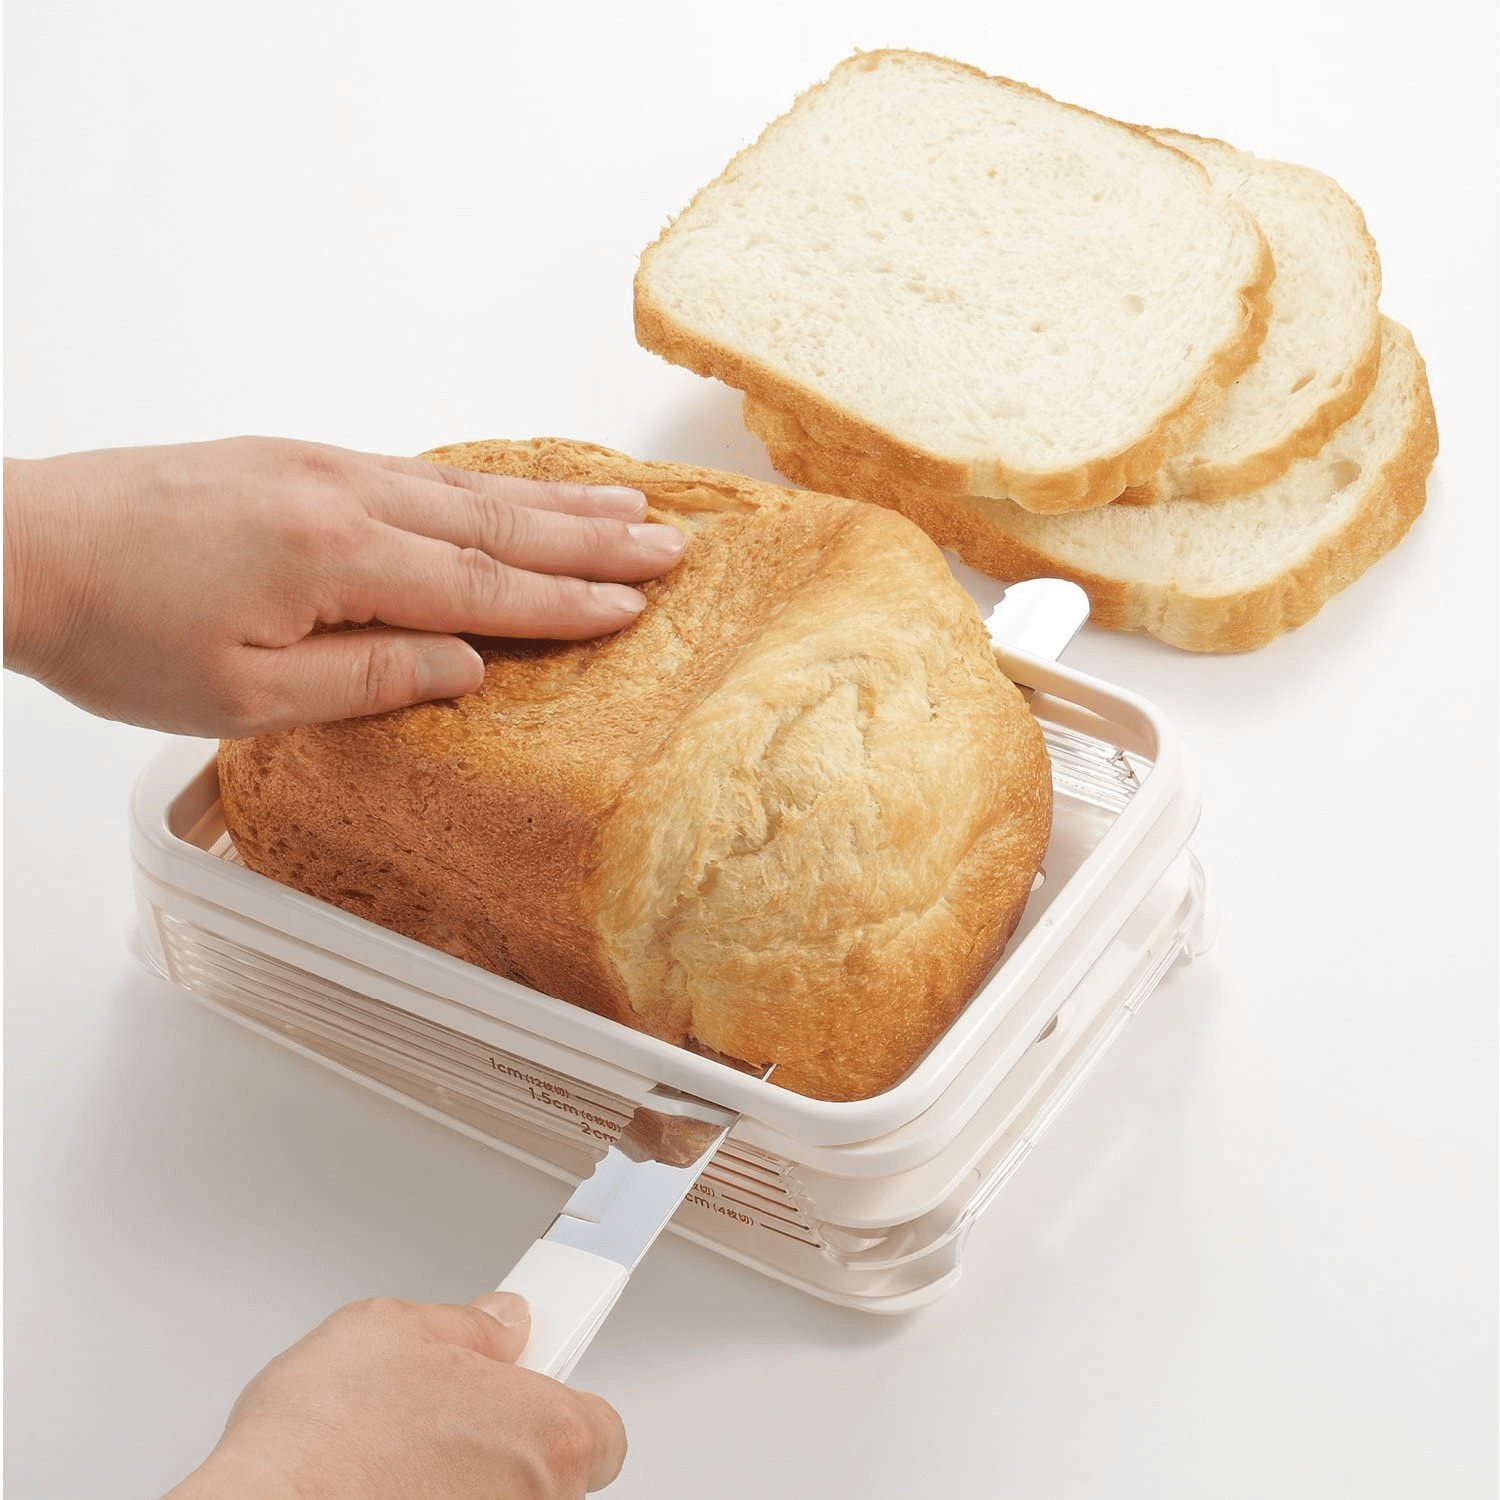 japanese bread slicer - slicing bread evenly